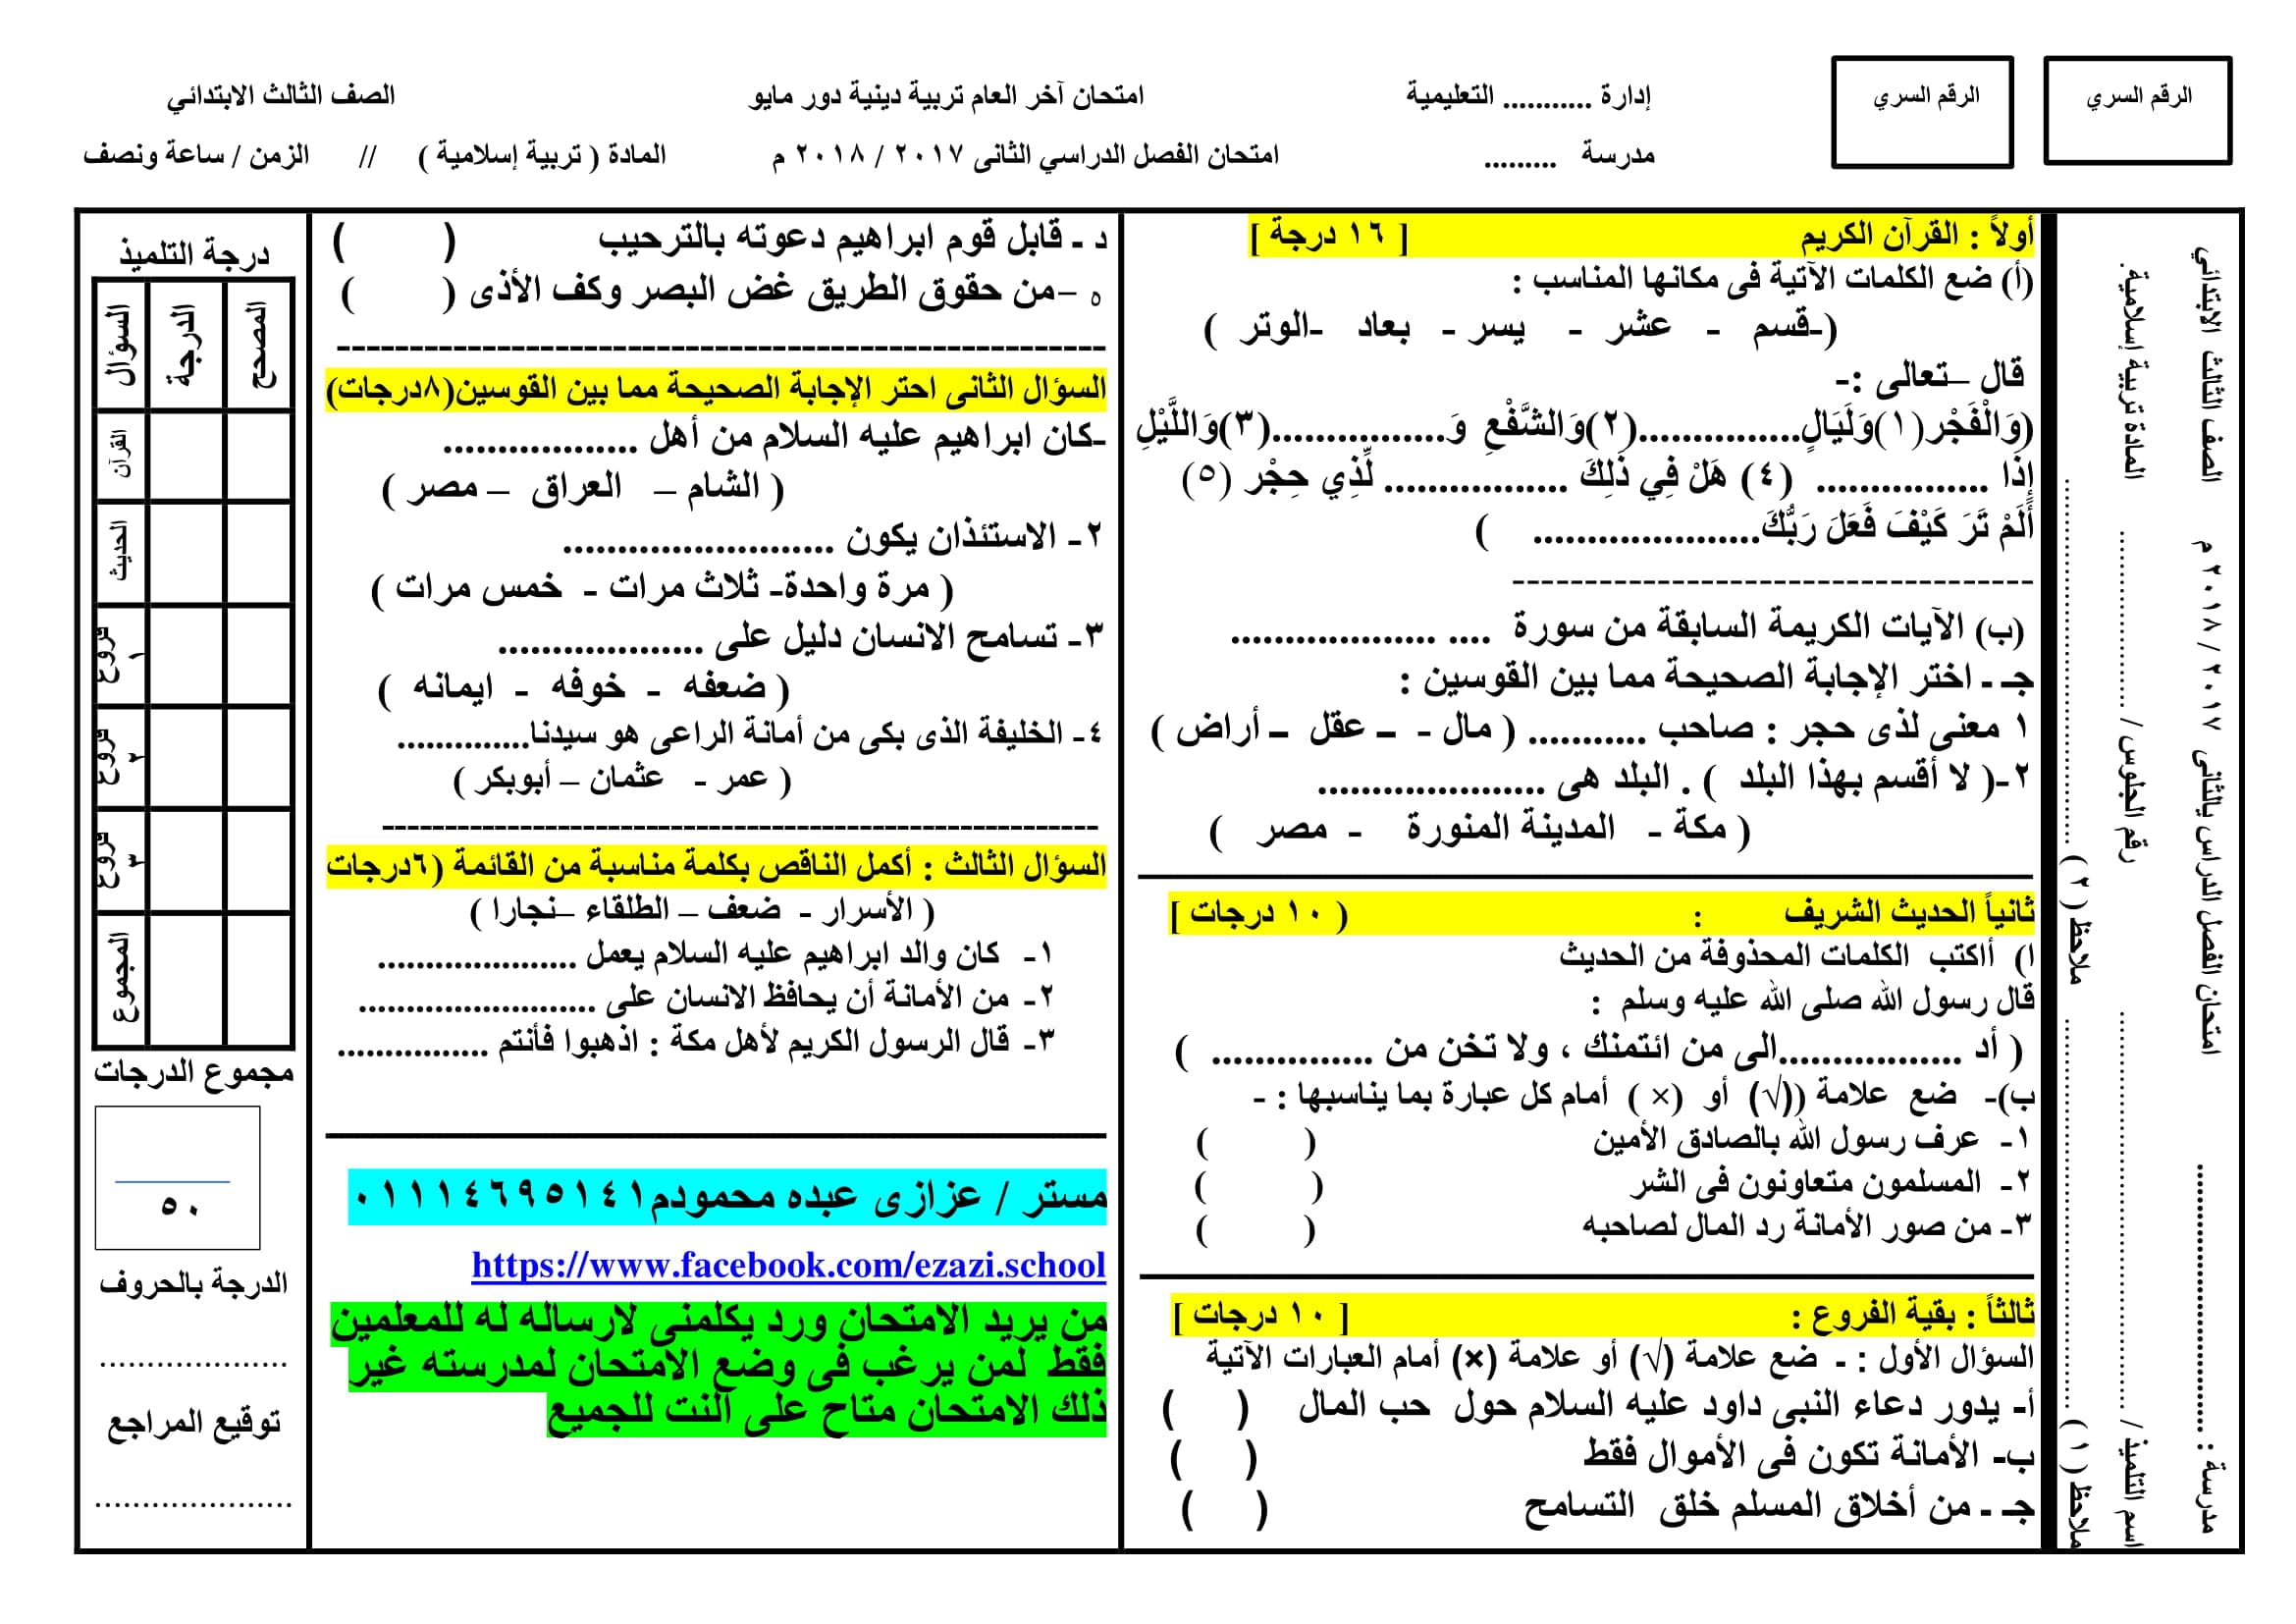 نموذج امتحان بتوزيع الدرجات فى التربية الدينية الاسلامية للصف الثالث الابتدائى الترم الثانى